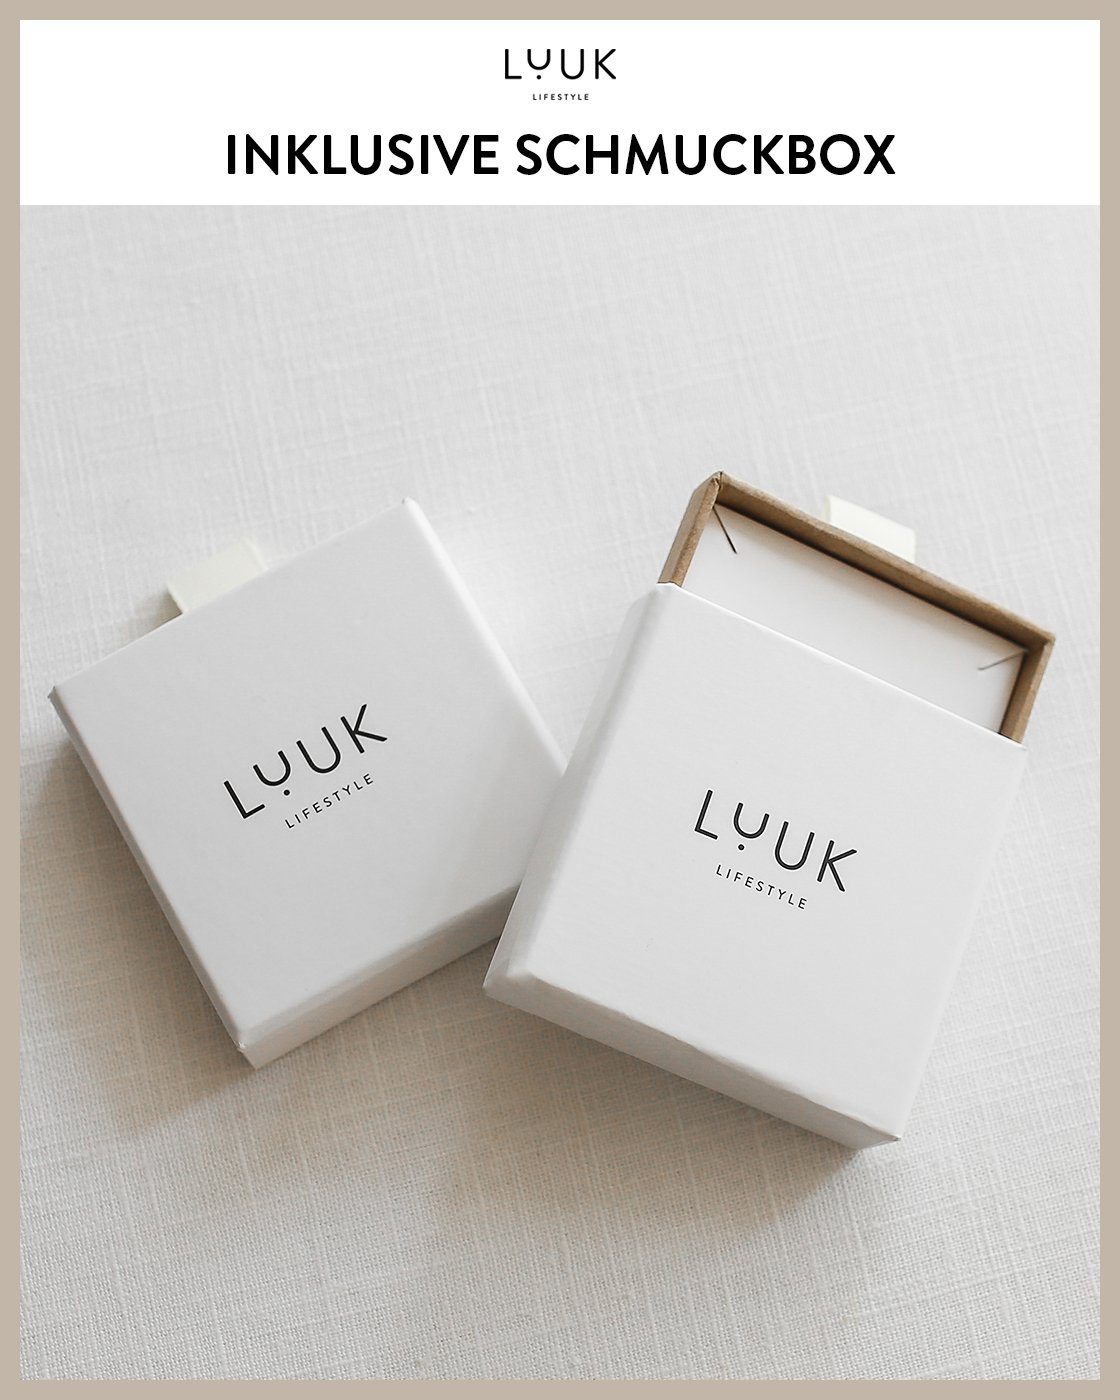 inklusive Schmuckbox LUUK Gold alltagstauglich, Sterne, Paar wasserfest Design, Ohrstecker schöner LIFESTYLE hautverträglich, & modernes